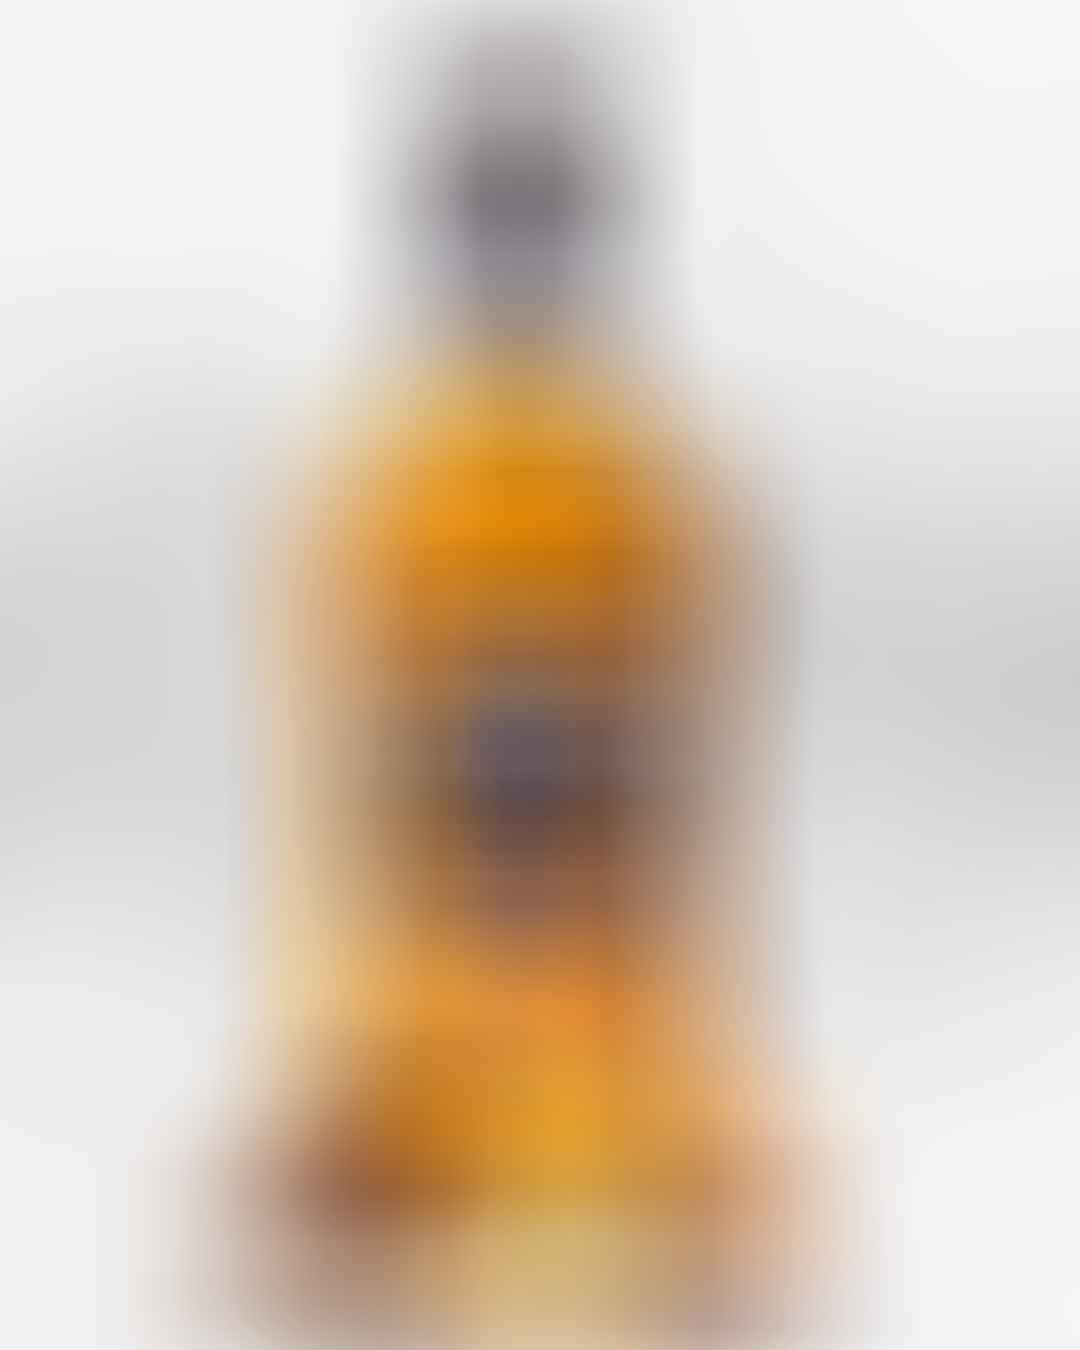 Jura Seven Wood - S Liquor